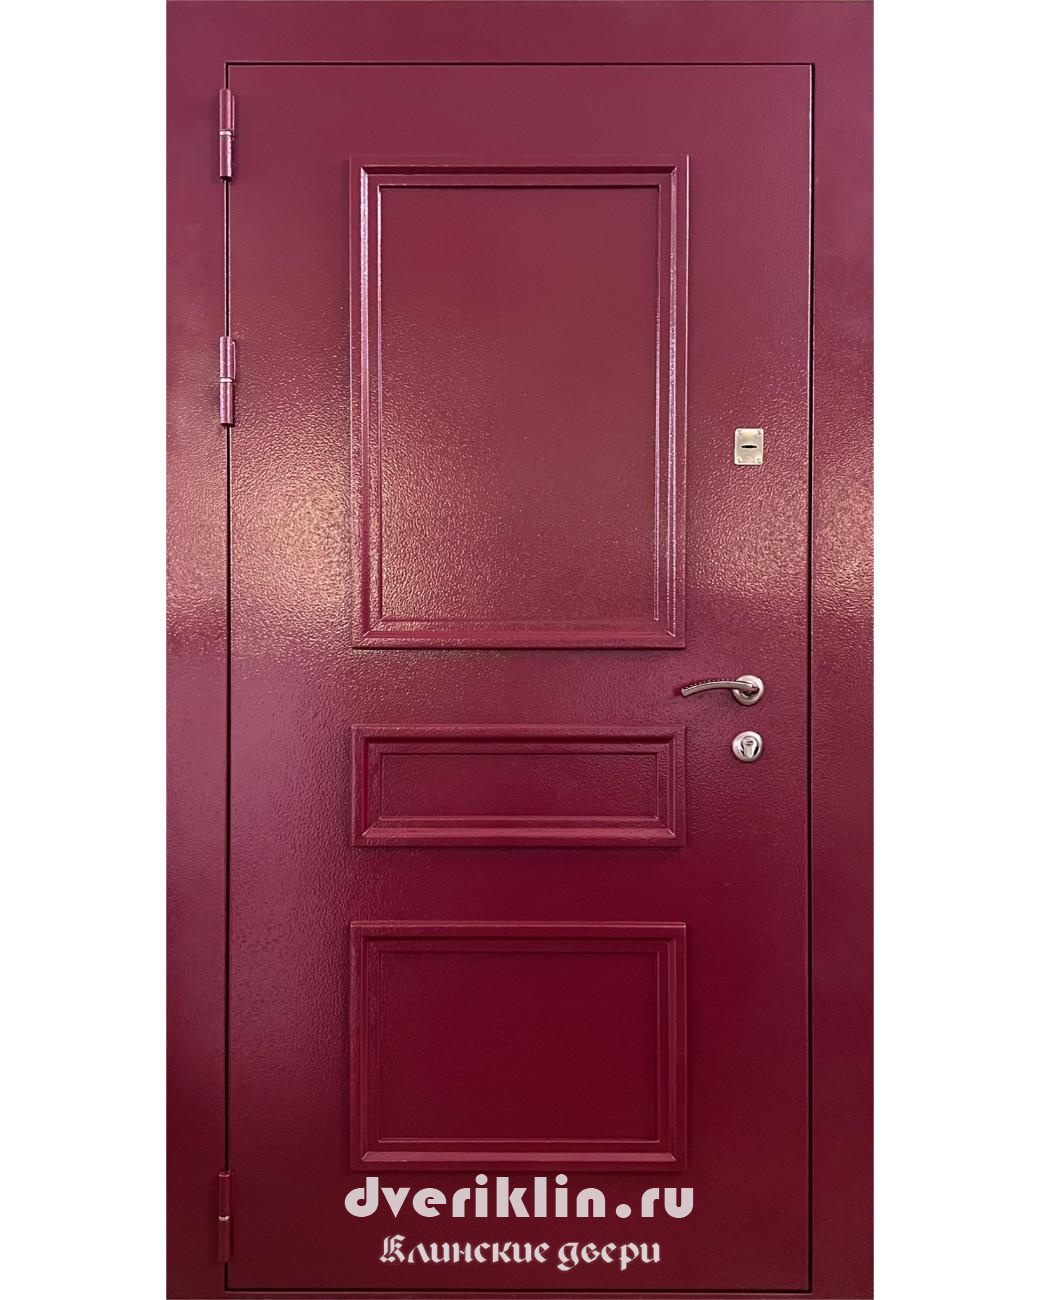 Дверь с рисунком на металле DPR-01 (С рисунком на металле)